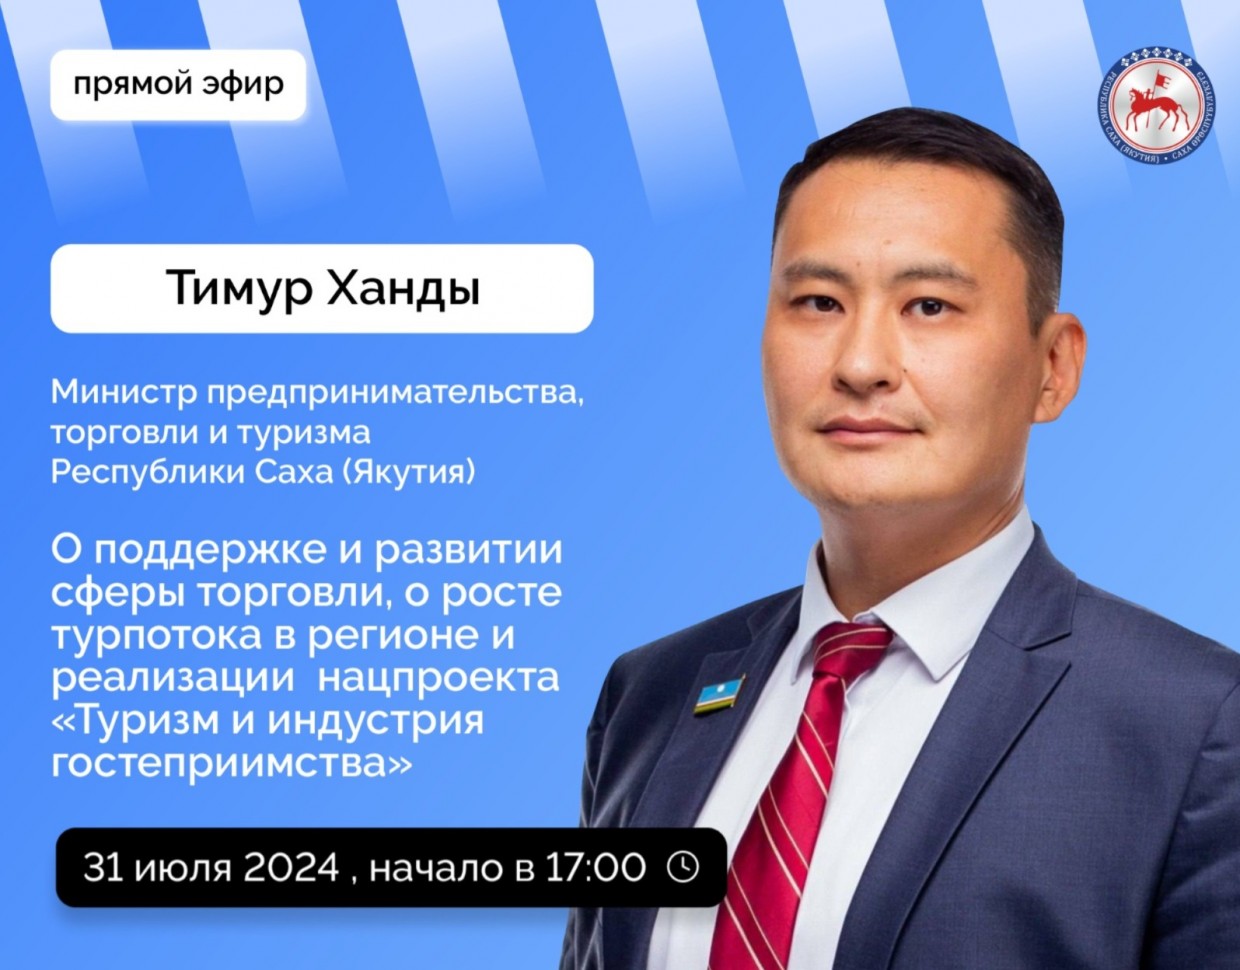 Министр предпринимательства, торговли и туризма Якутии ответит на вопросы в прямом эфире соцсетей